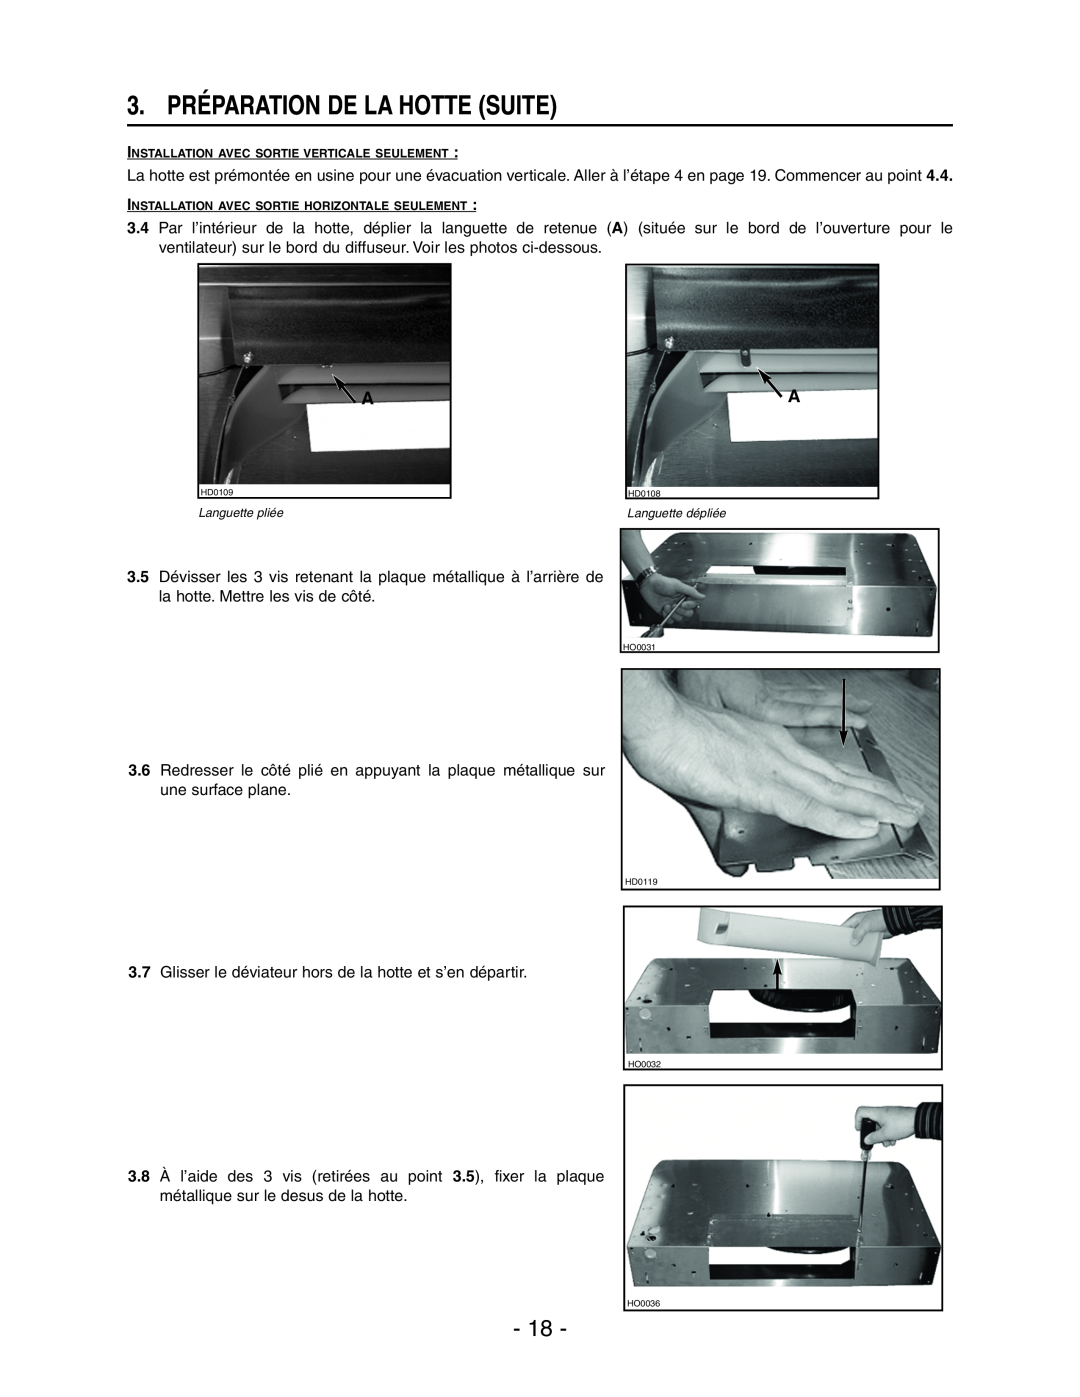 Broan E661 manual 3. PRÉPARATION DE LA HOTTE SUITE, Installation Avec Sortie Verticale Seulement 